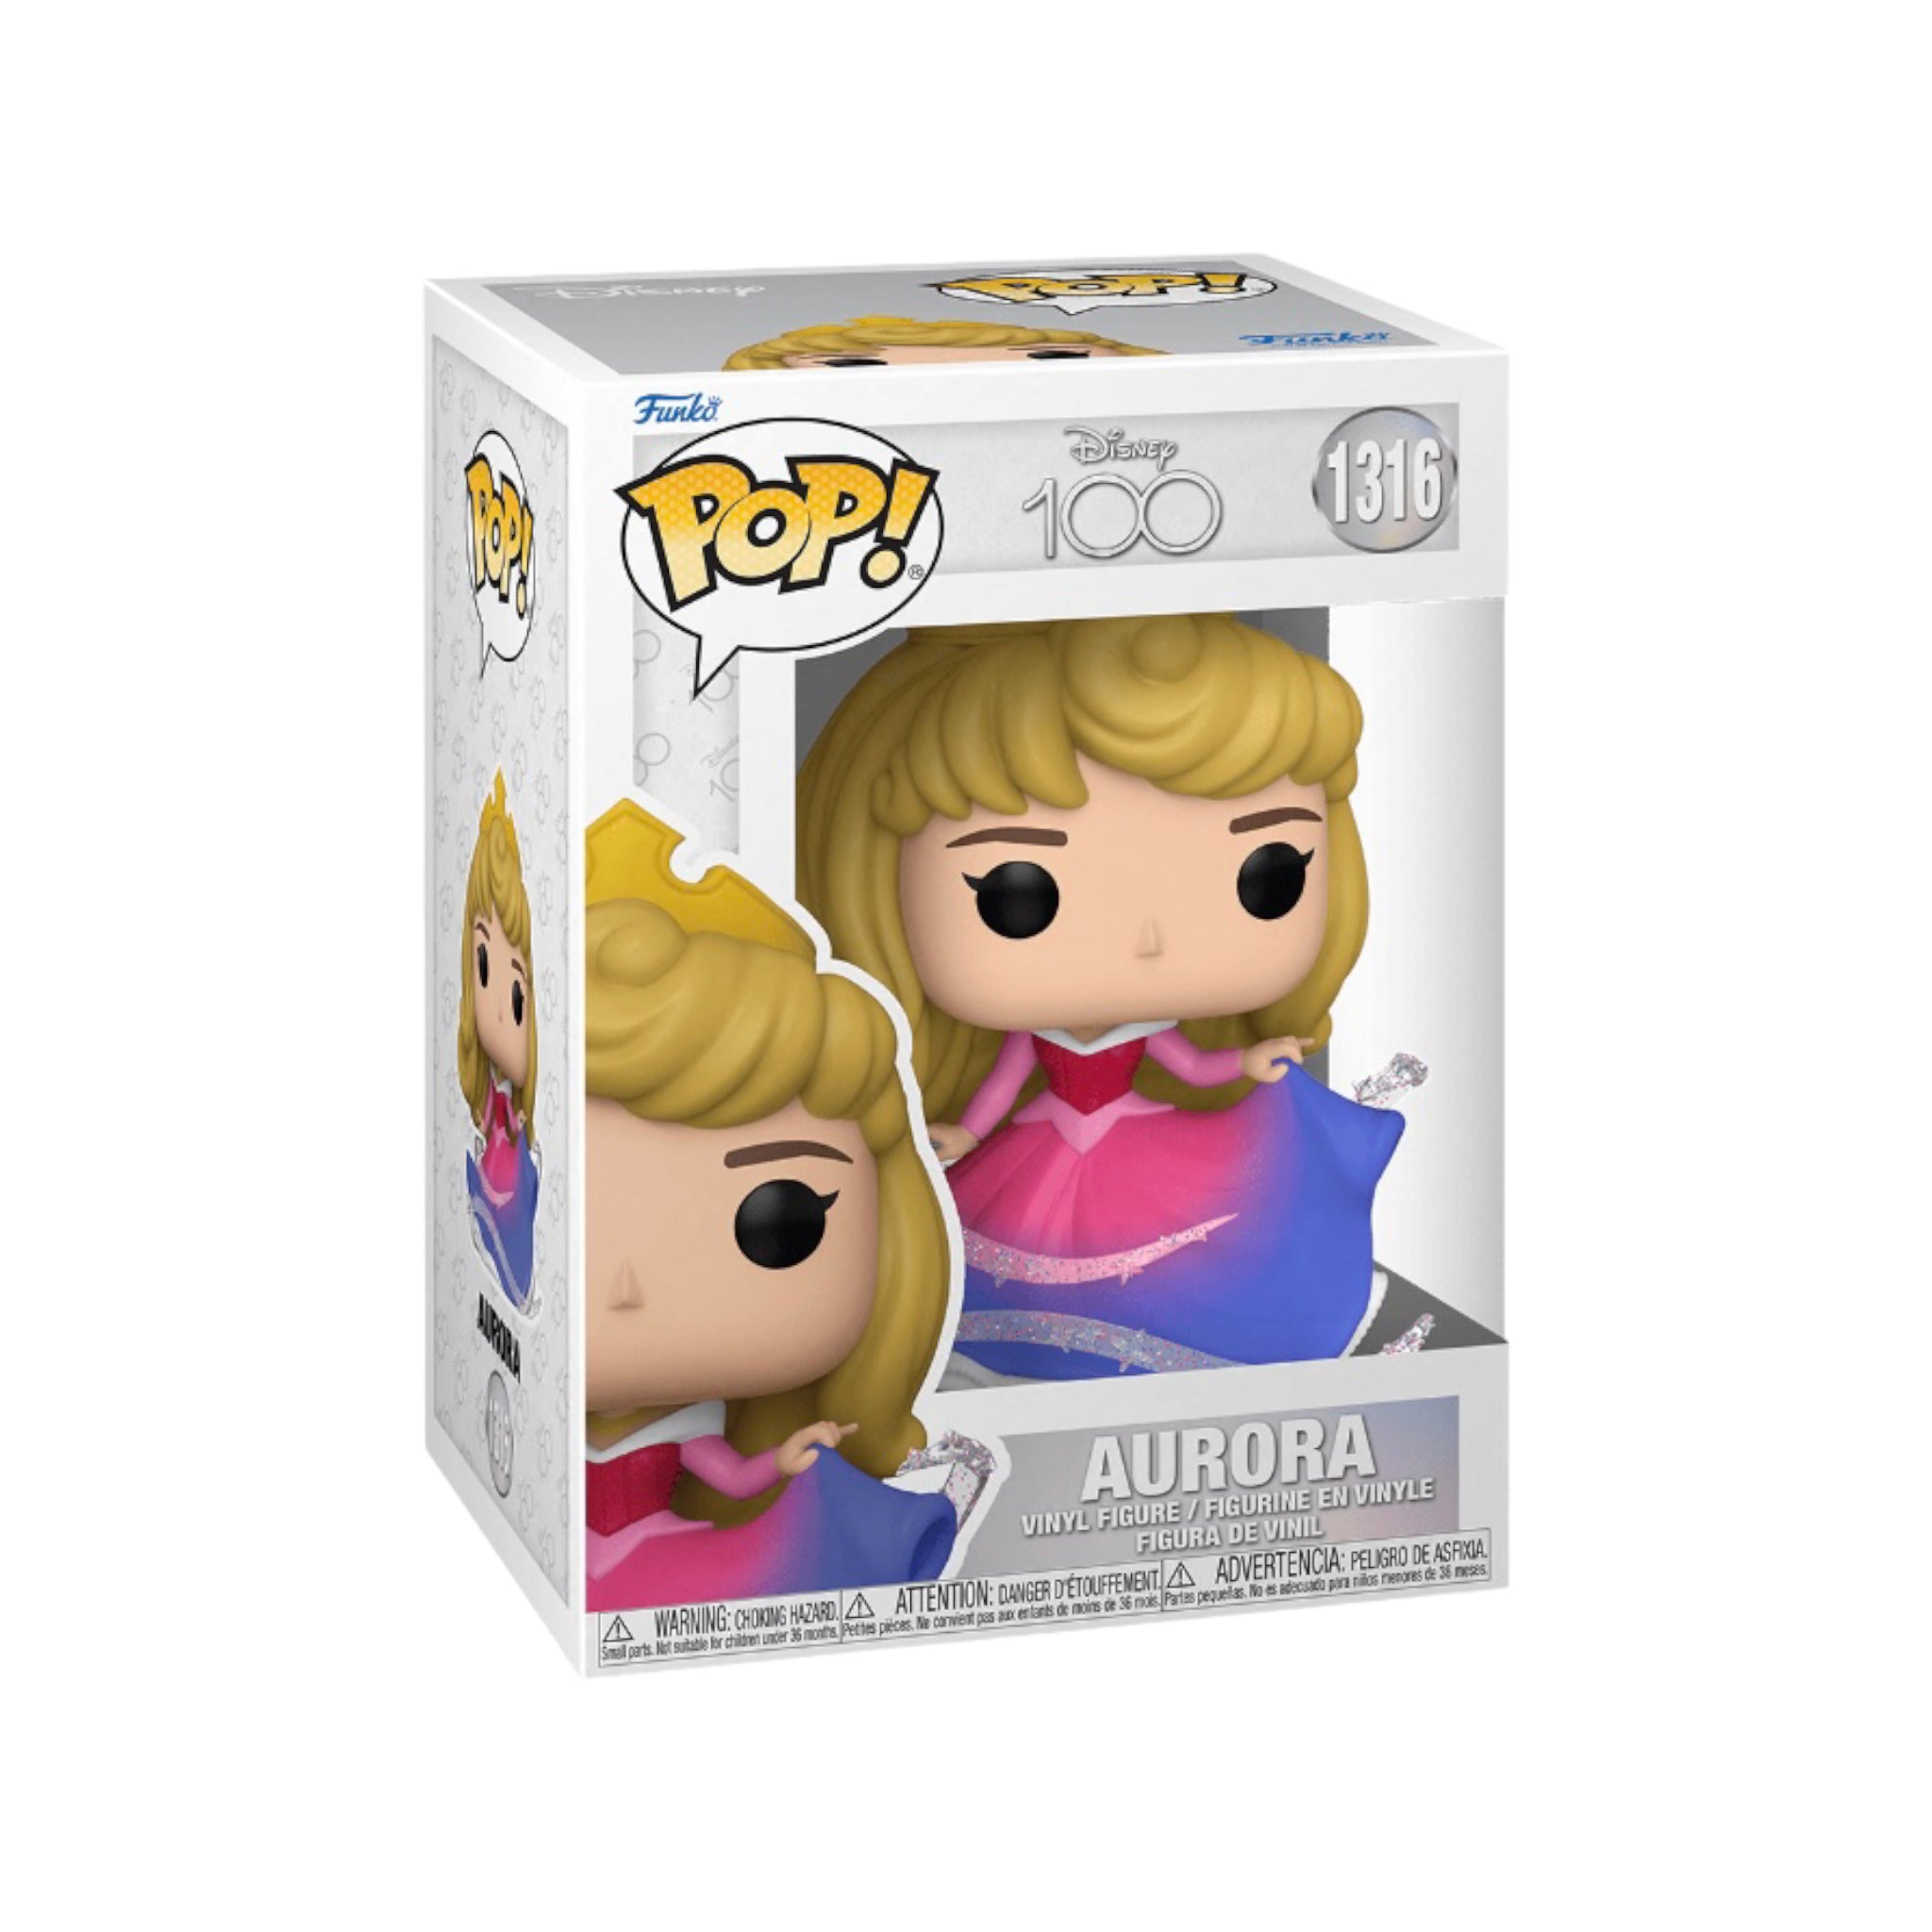 Aurora #1316 Funko Pop! - Disney 100